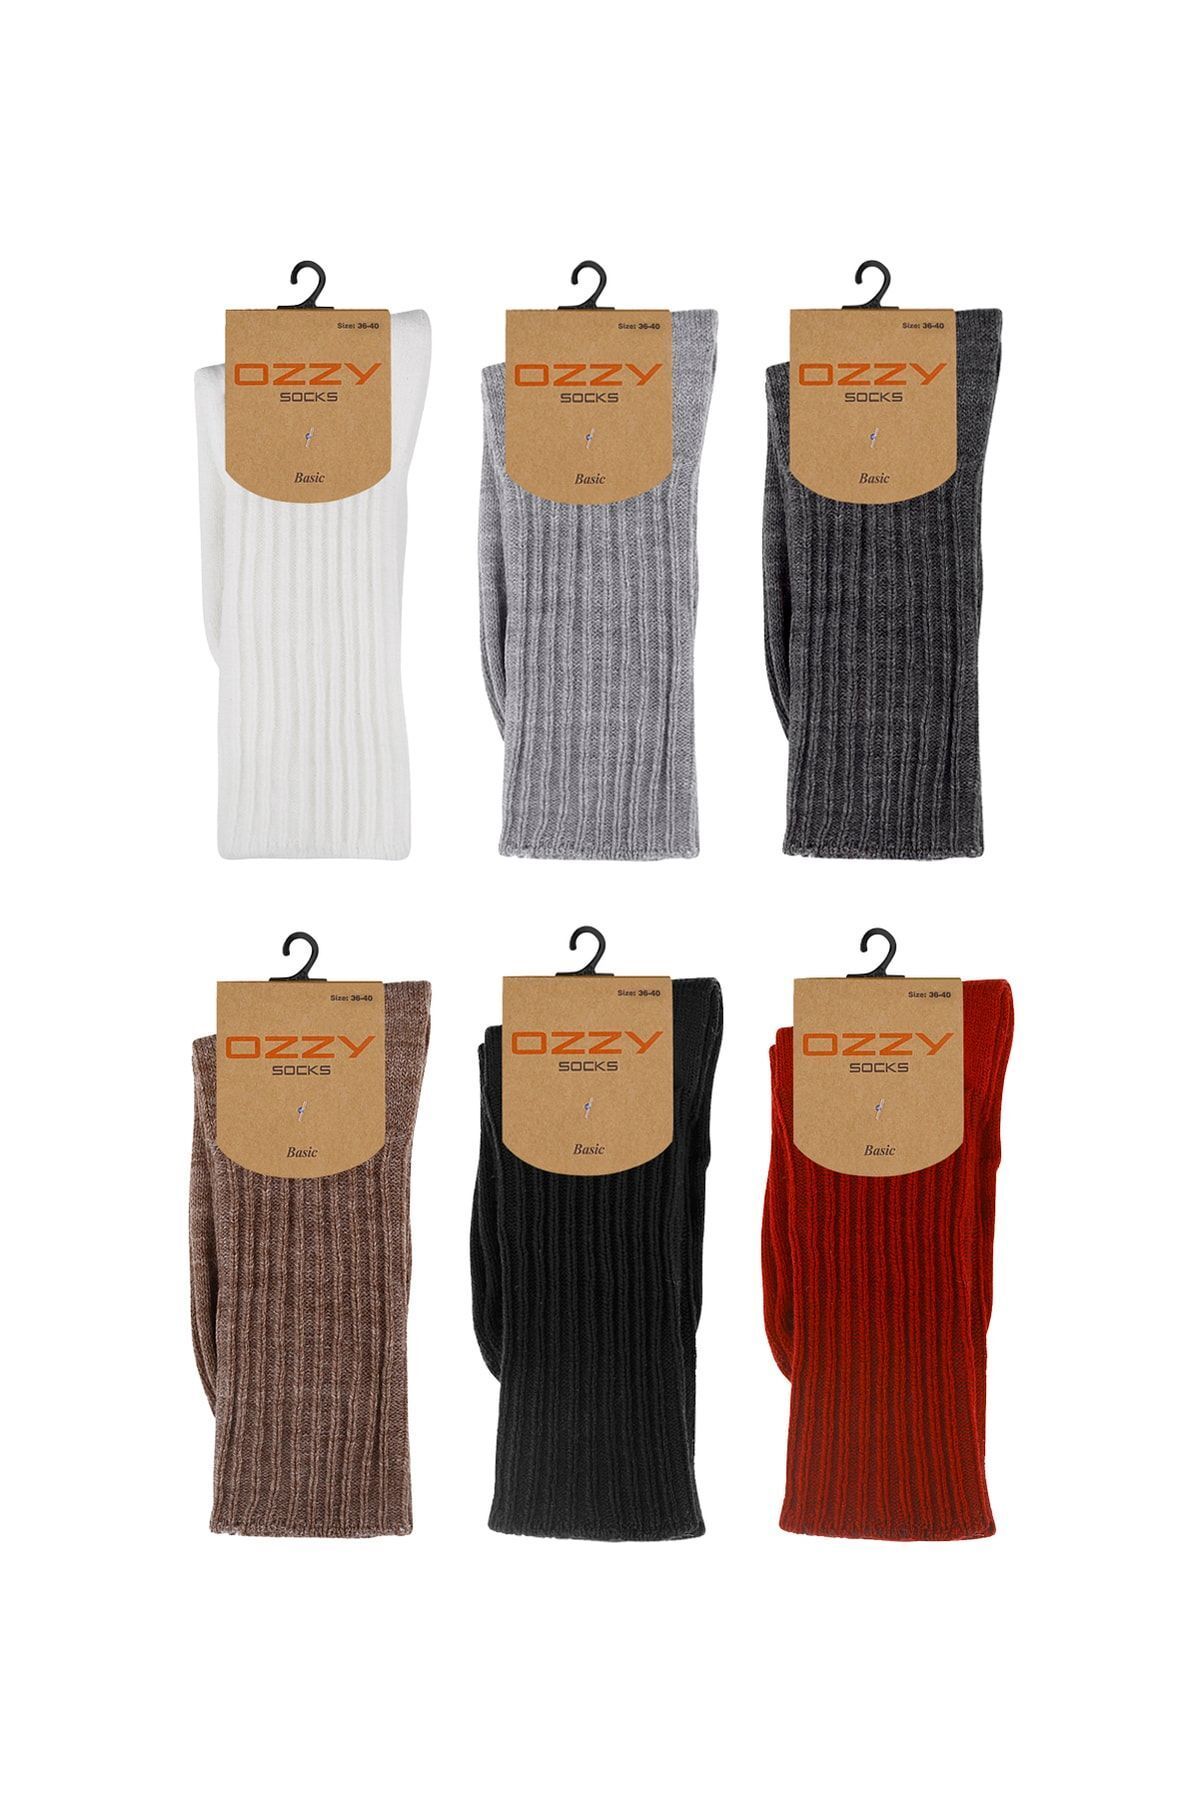 Ozzy Socks 6 Çift Kışlık Kadın Yünlü Uyku Çorabı Soft Touch